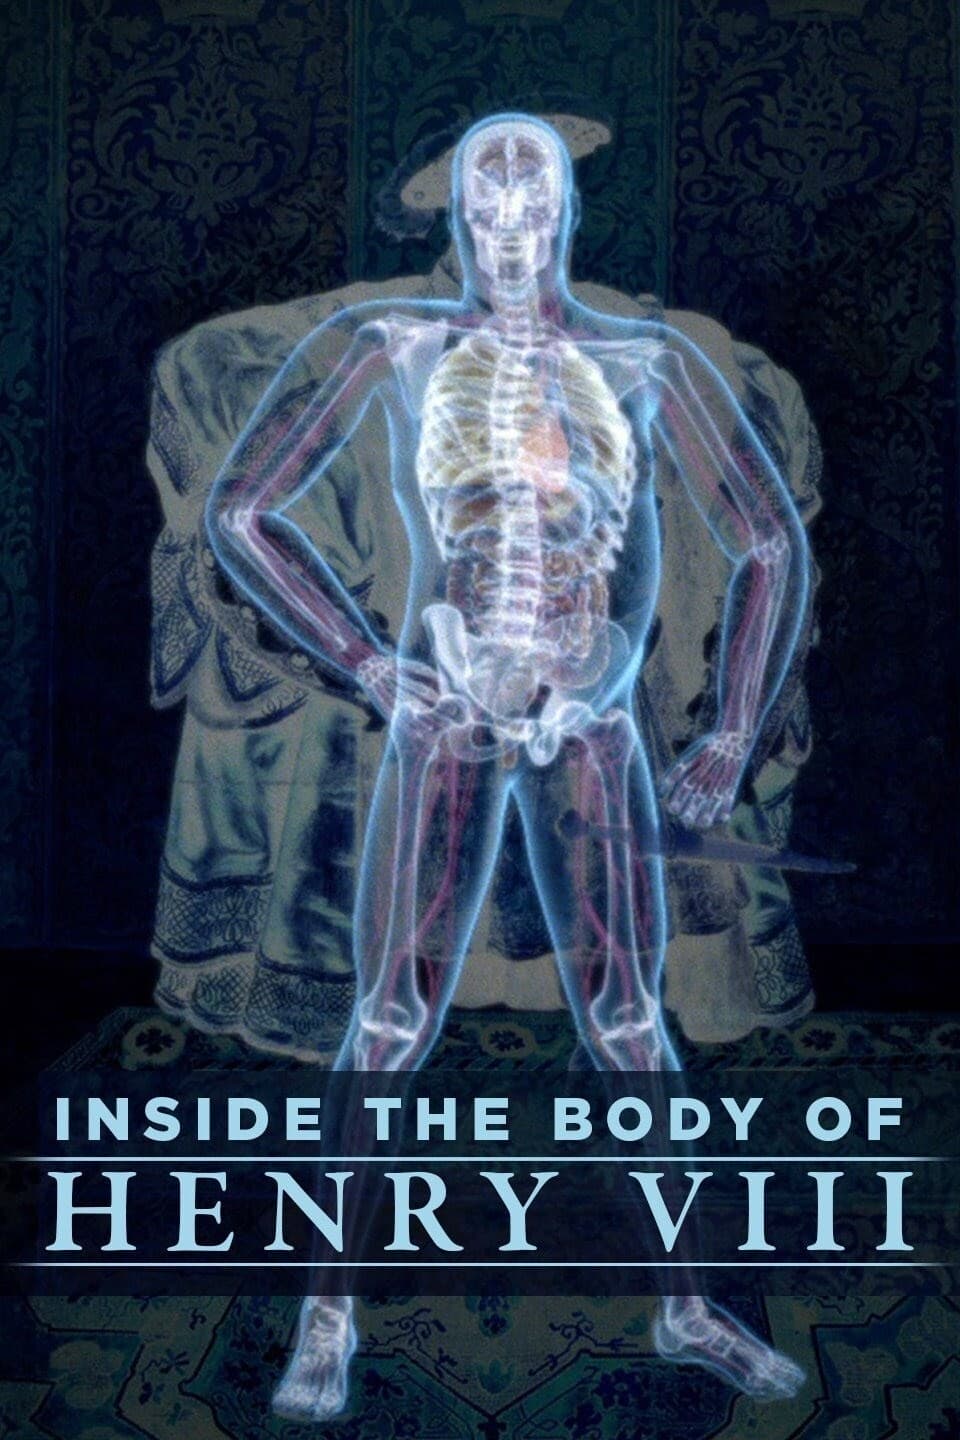 Inside the Body of Henry VIII